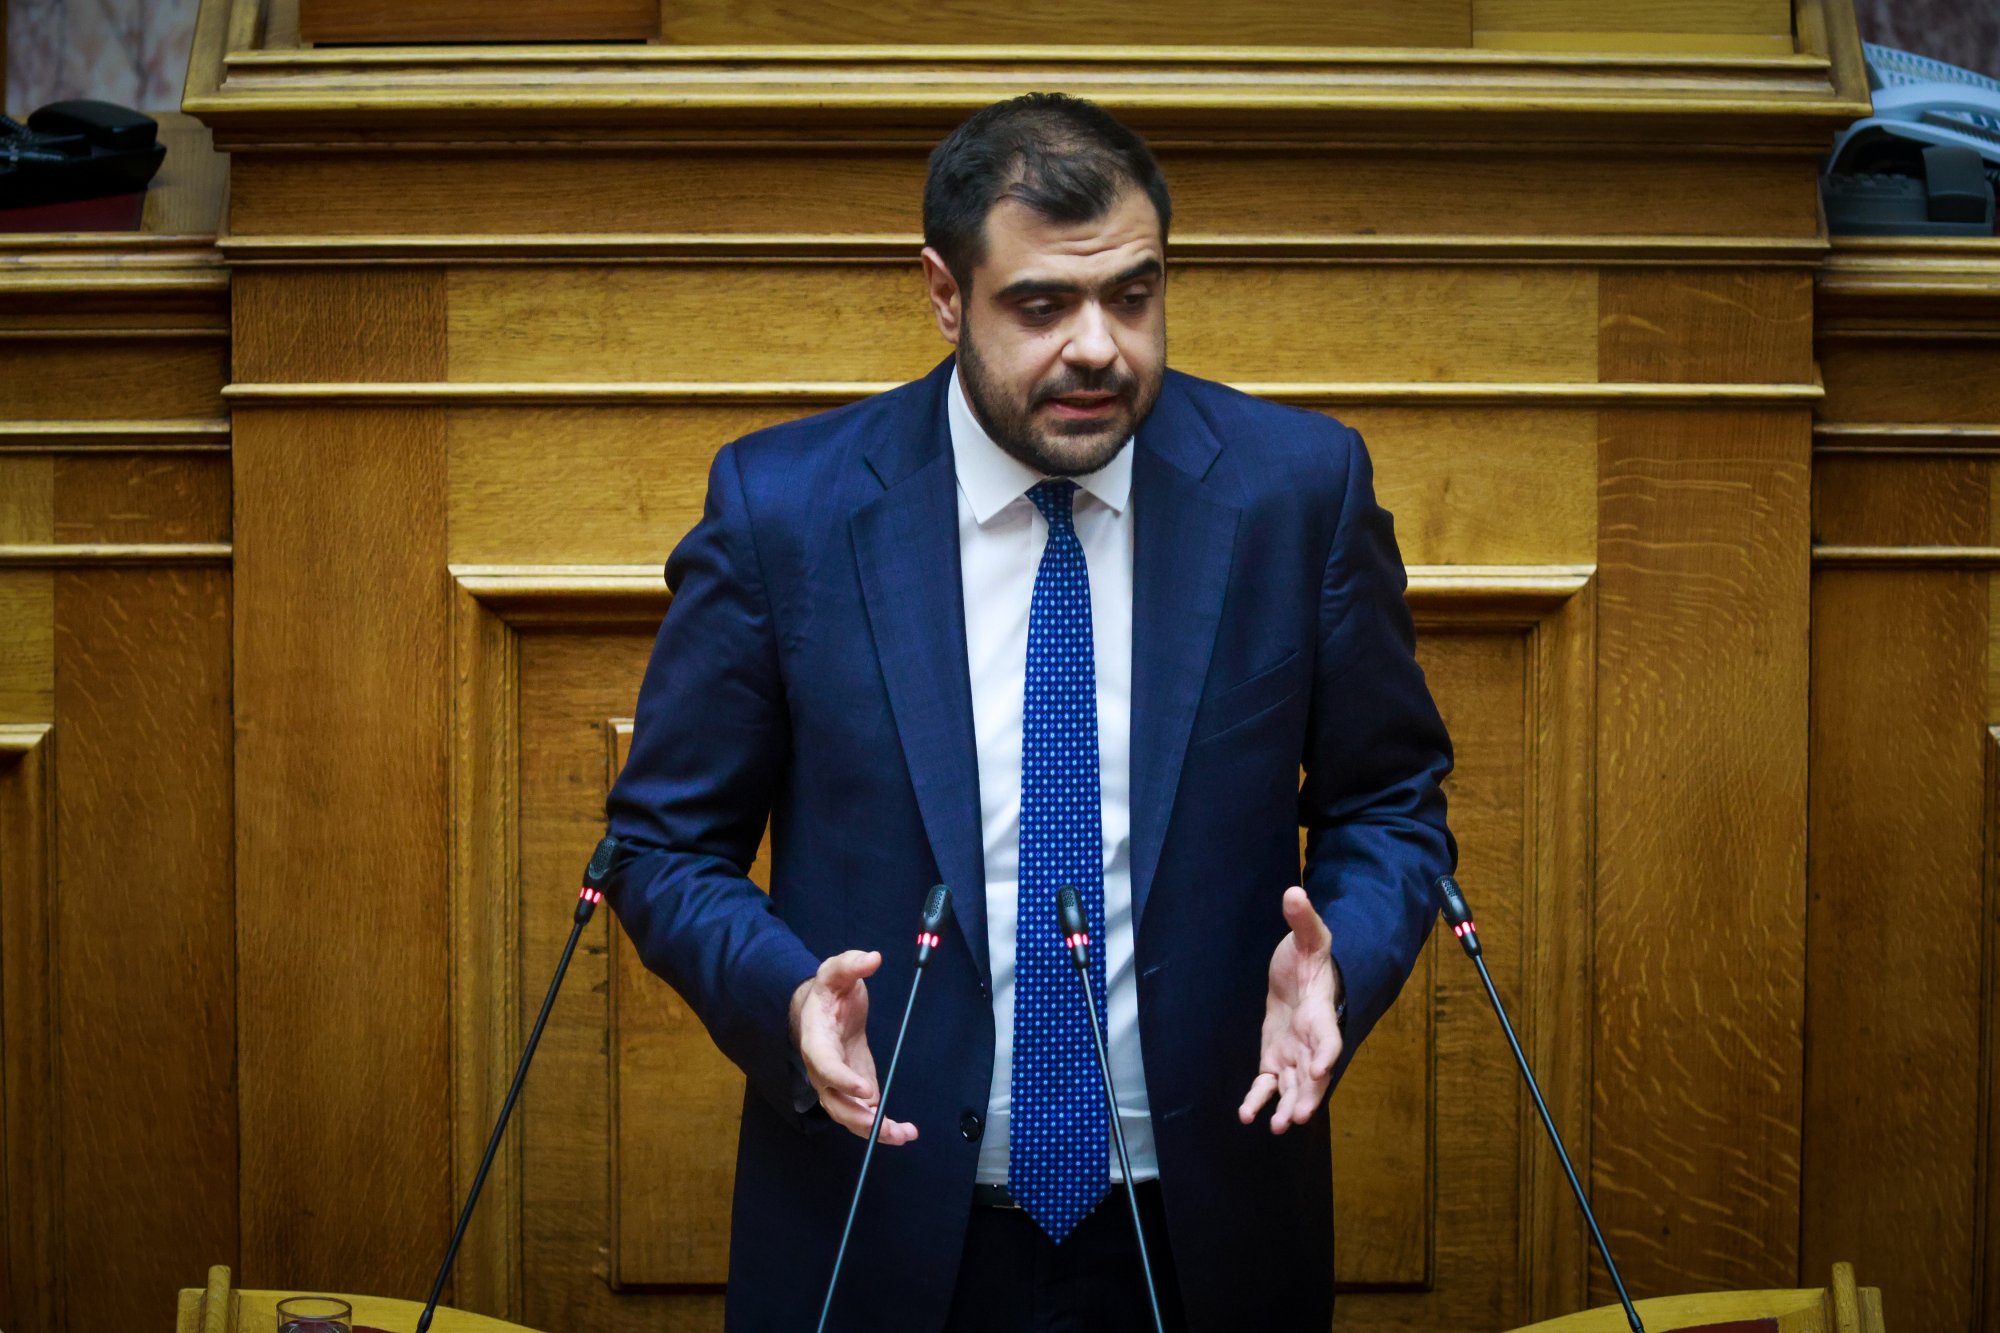 Π. Μαρινάκης: Υπήρξε προσυνεννόηση ΠΑΣΟΚ - ΣΥΡΙΖΑ για πρόταση δυσπιστίας